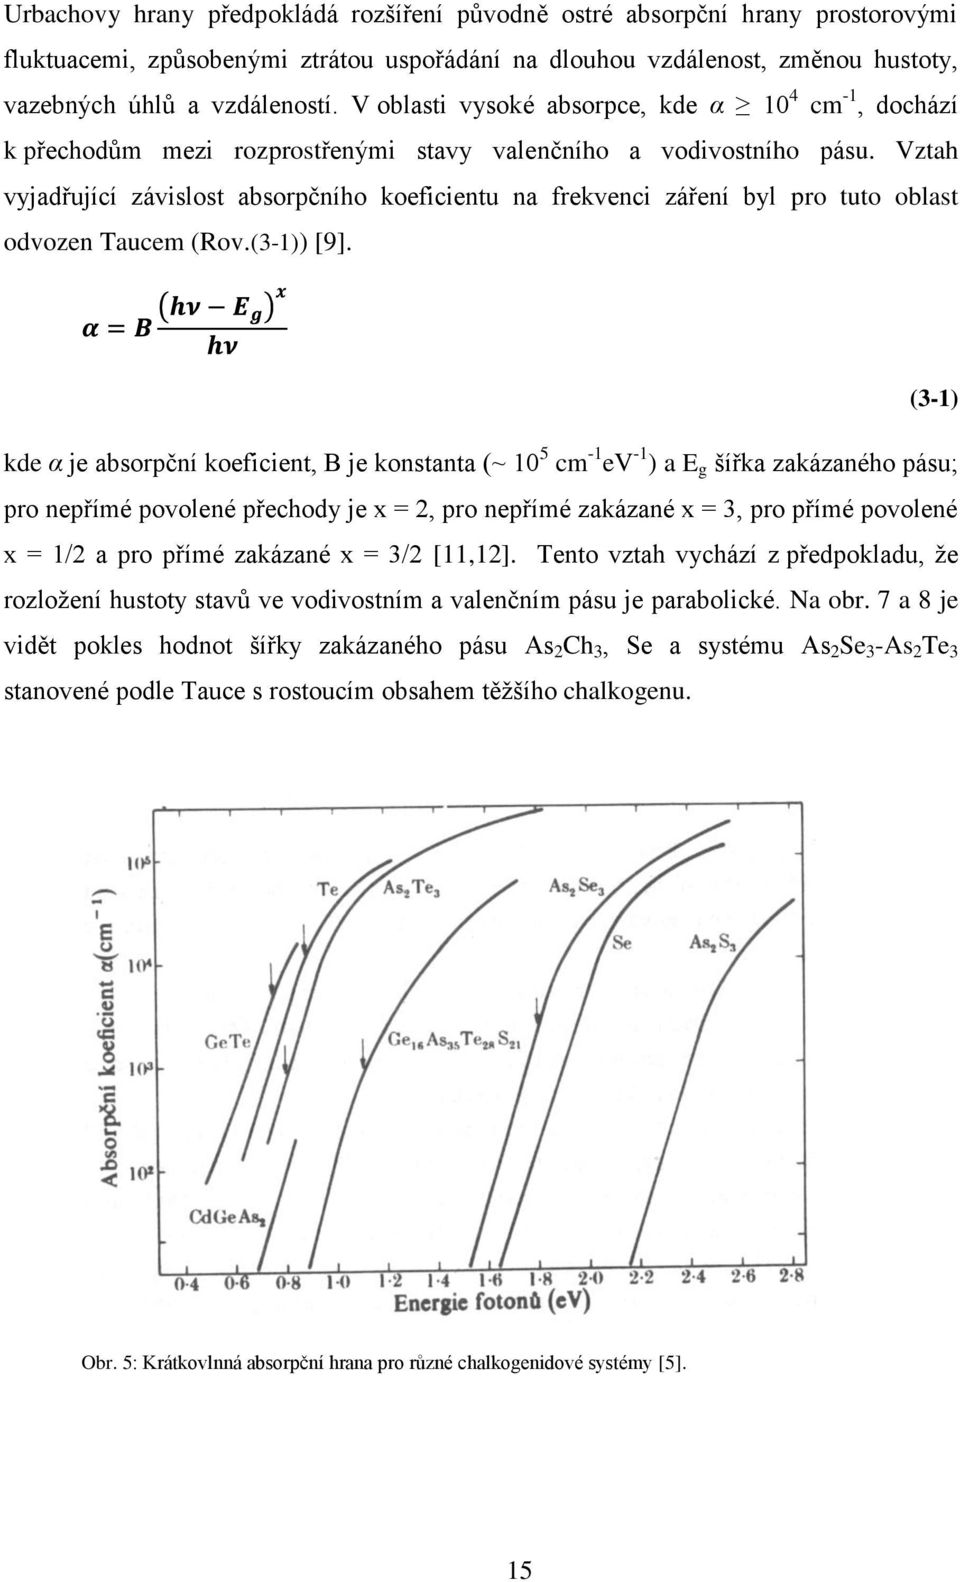 Vztah vyjadřující závislost absorpčního koeficientu na frekvenci záření byl pro tuto oblast odvozen Taucem (Rov.(3-1)) [9].